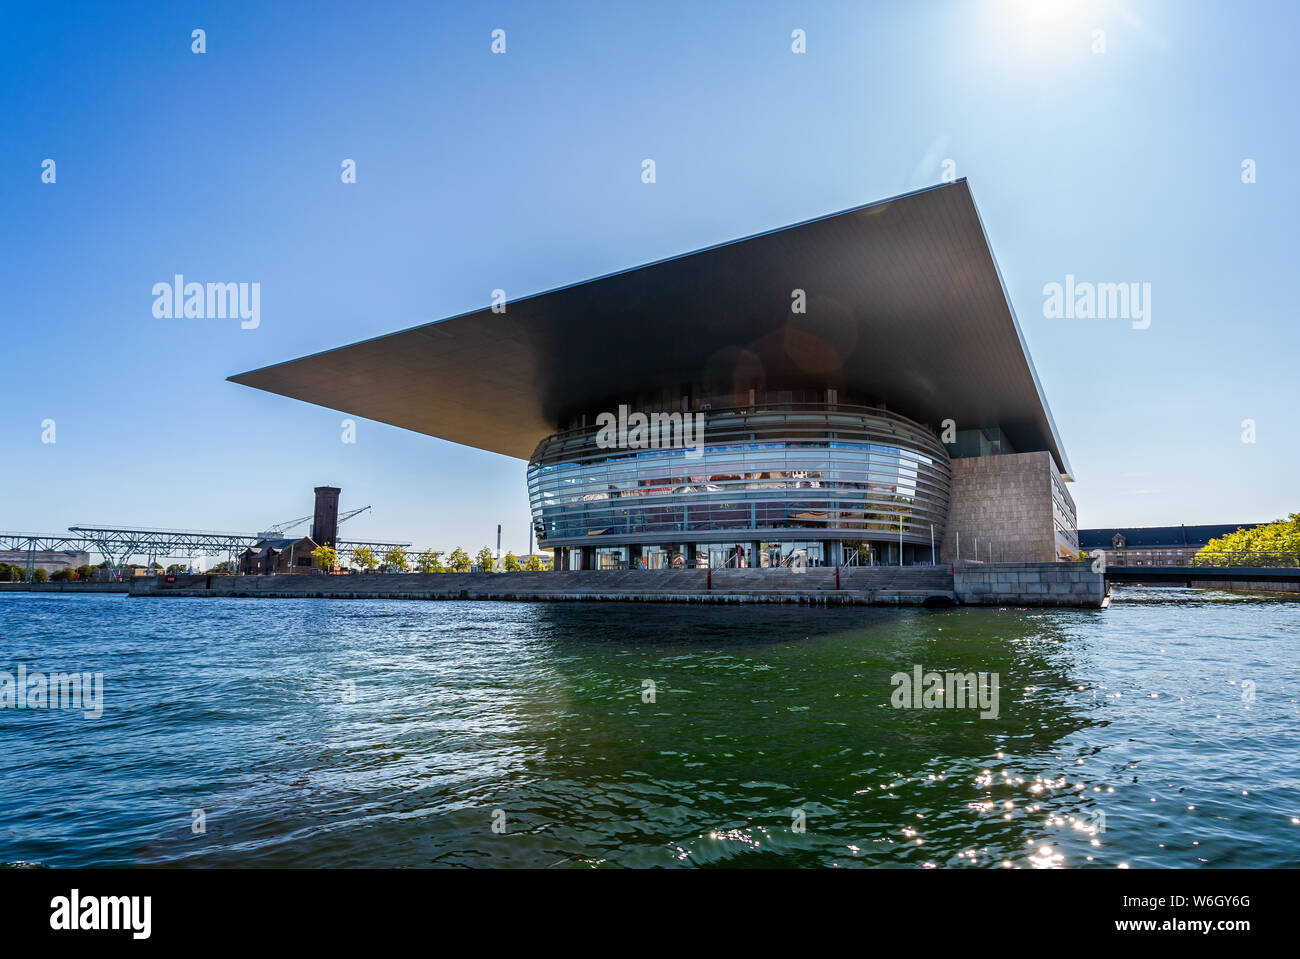 L'Opéra de Copenhague sur le bord de l'eau à Copenhague, Danemark le 18 juillet 2019 Banque D'Images